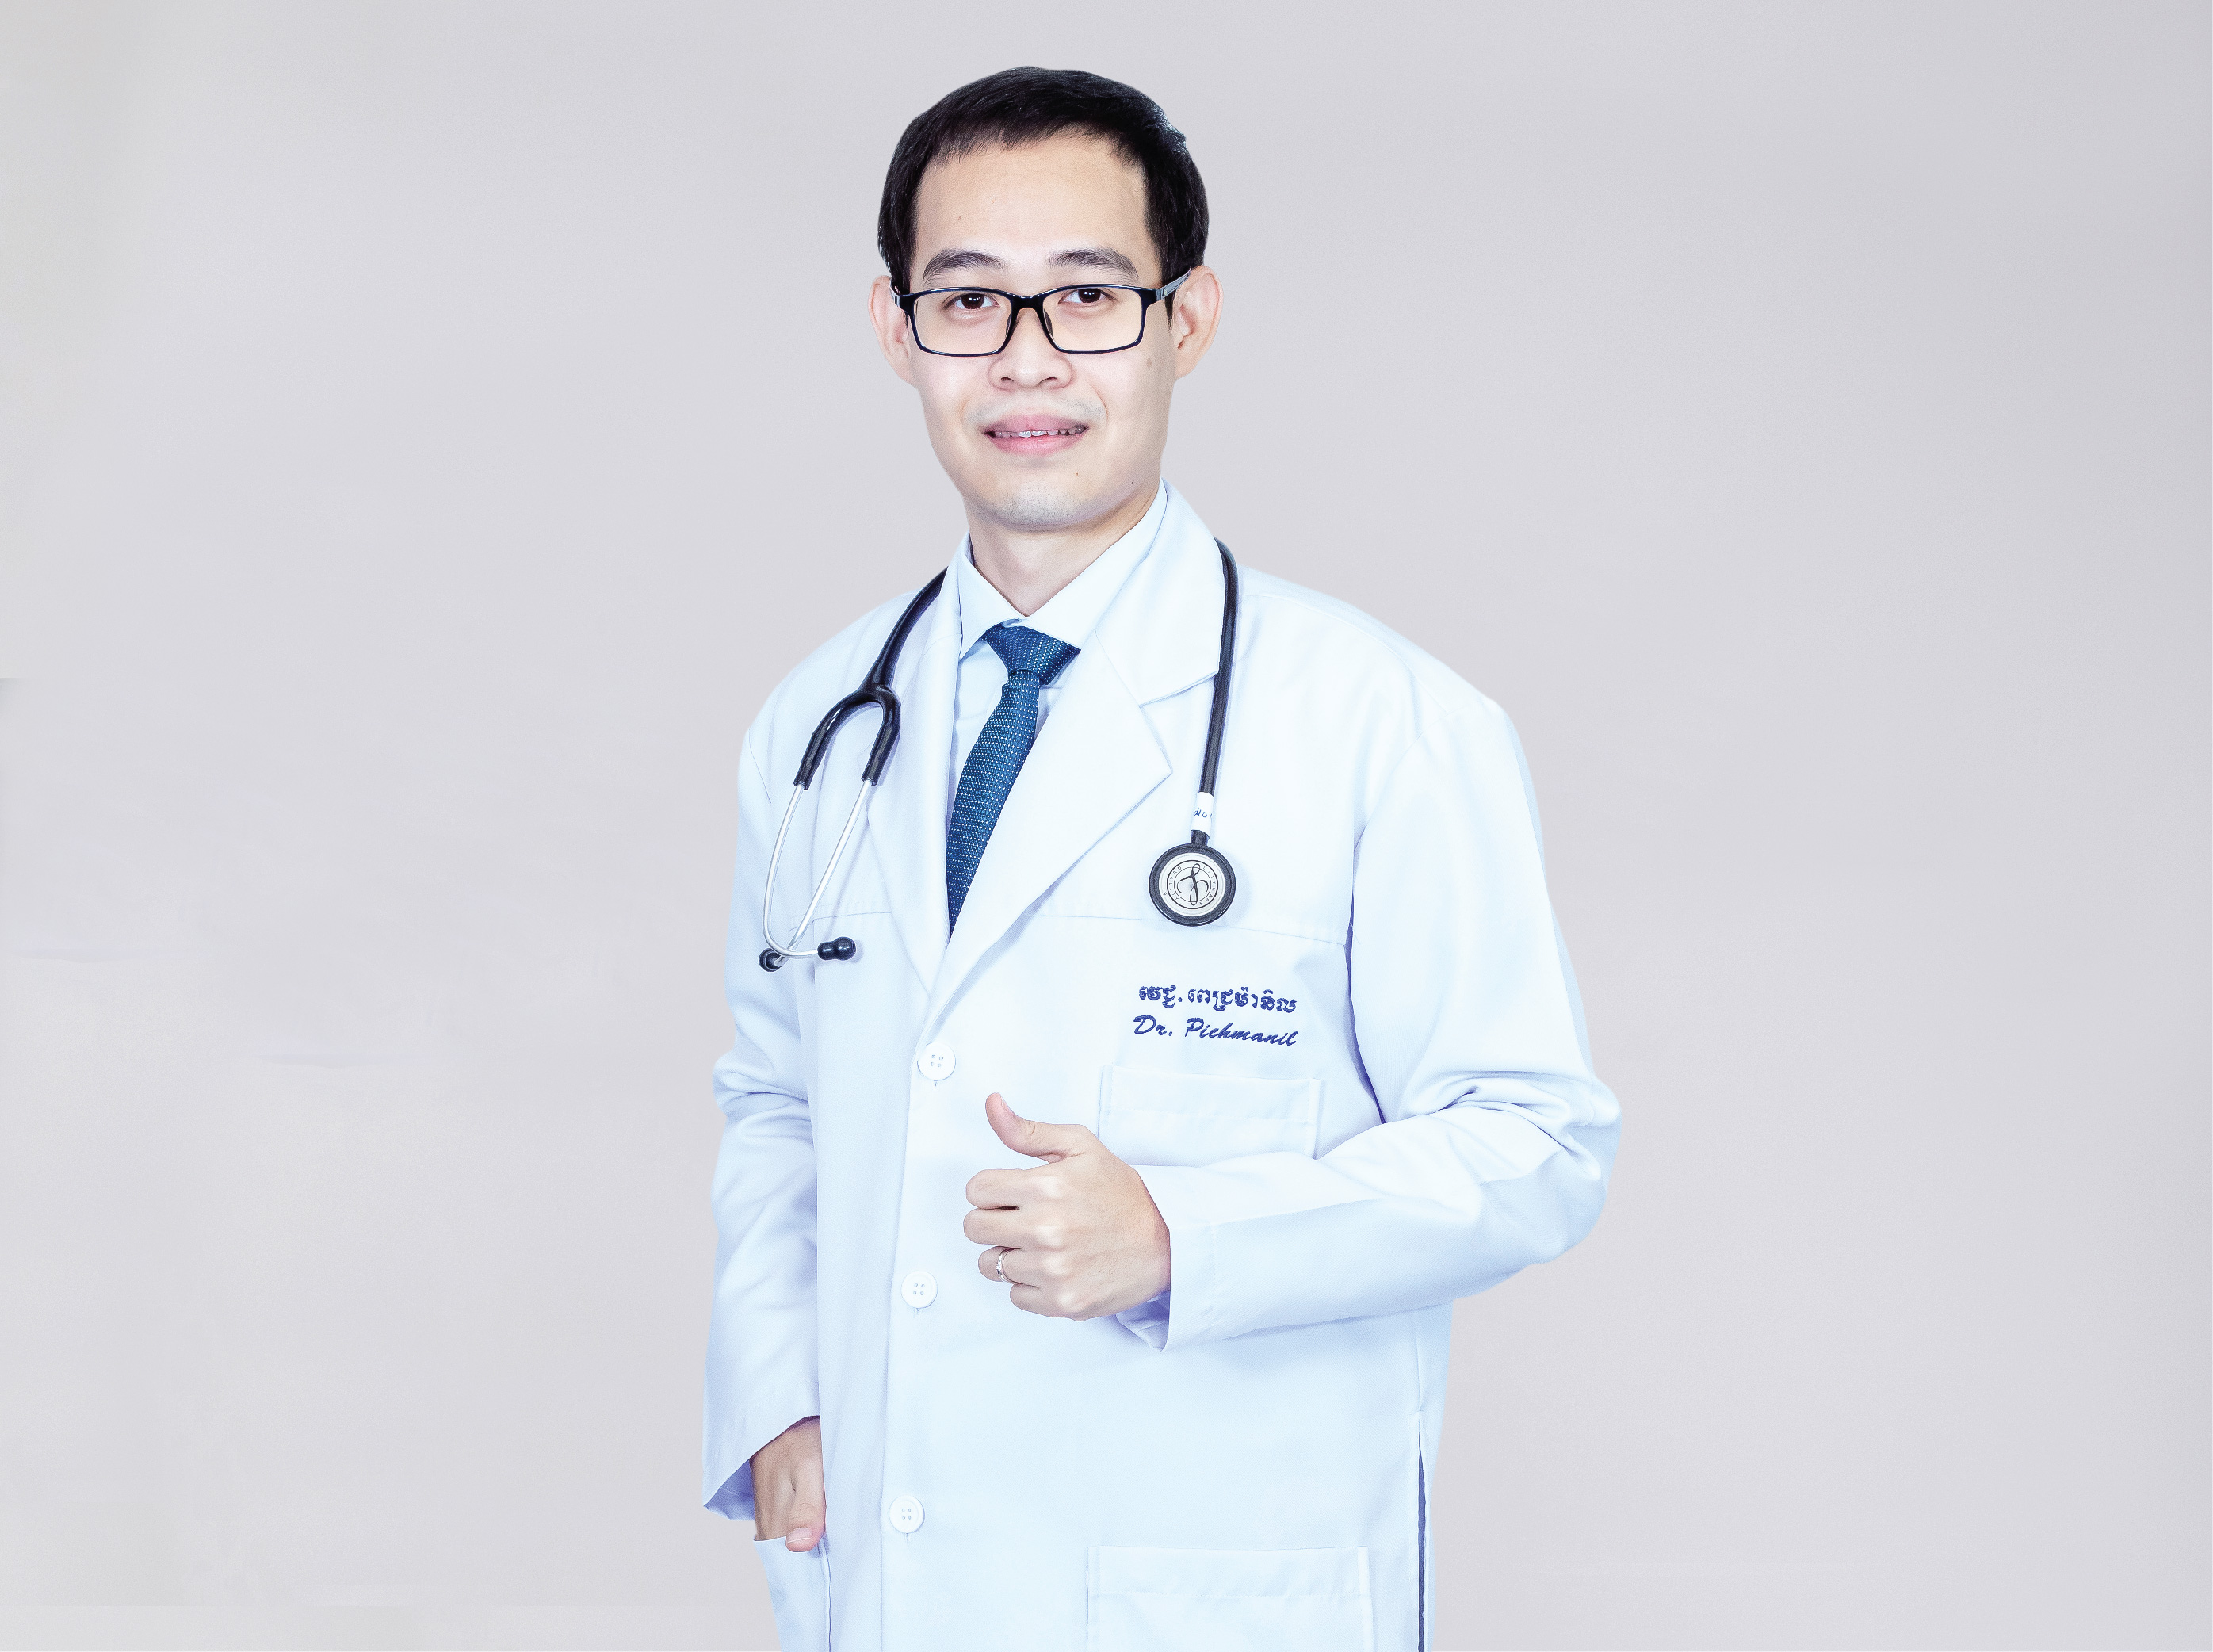 Dr. Khmao Pichmanil